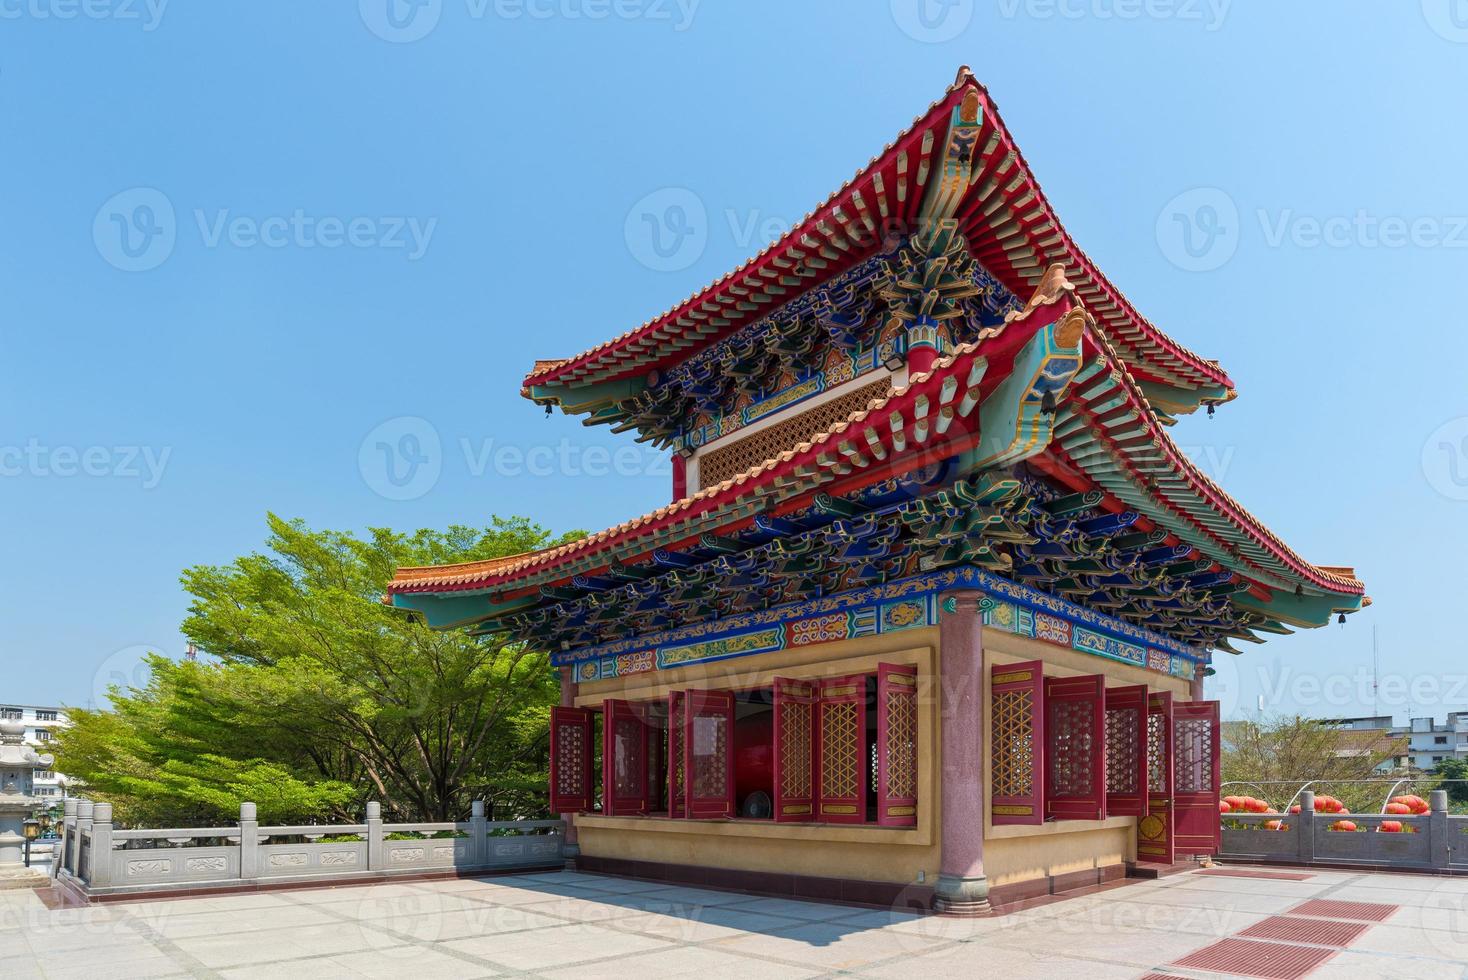 arquitectura del templo chino en tailandia. el dominio público o tesoro del budismo, sin restricción en copia o uso foto